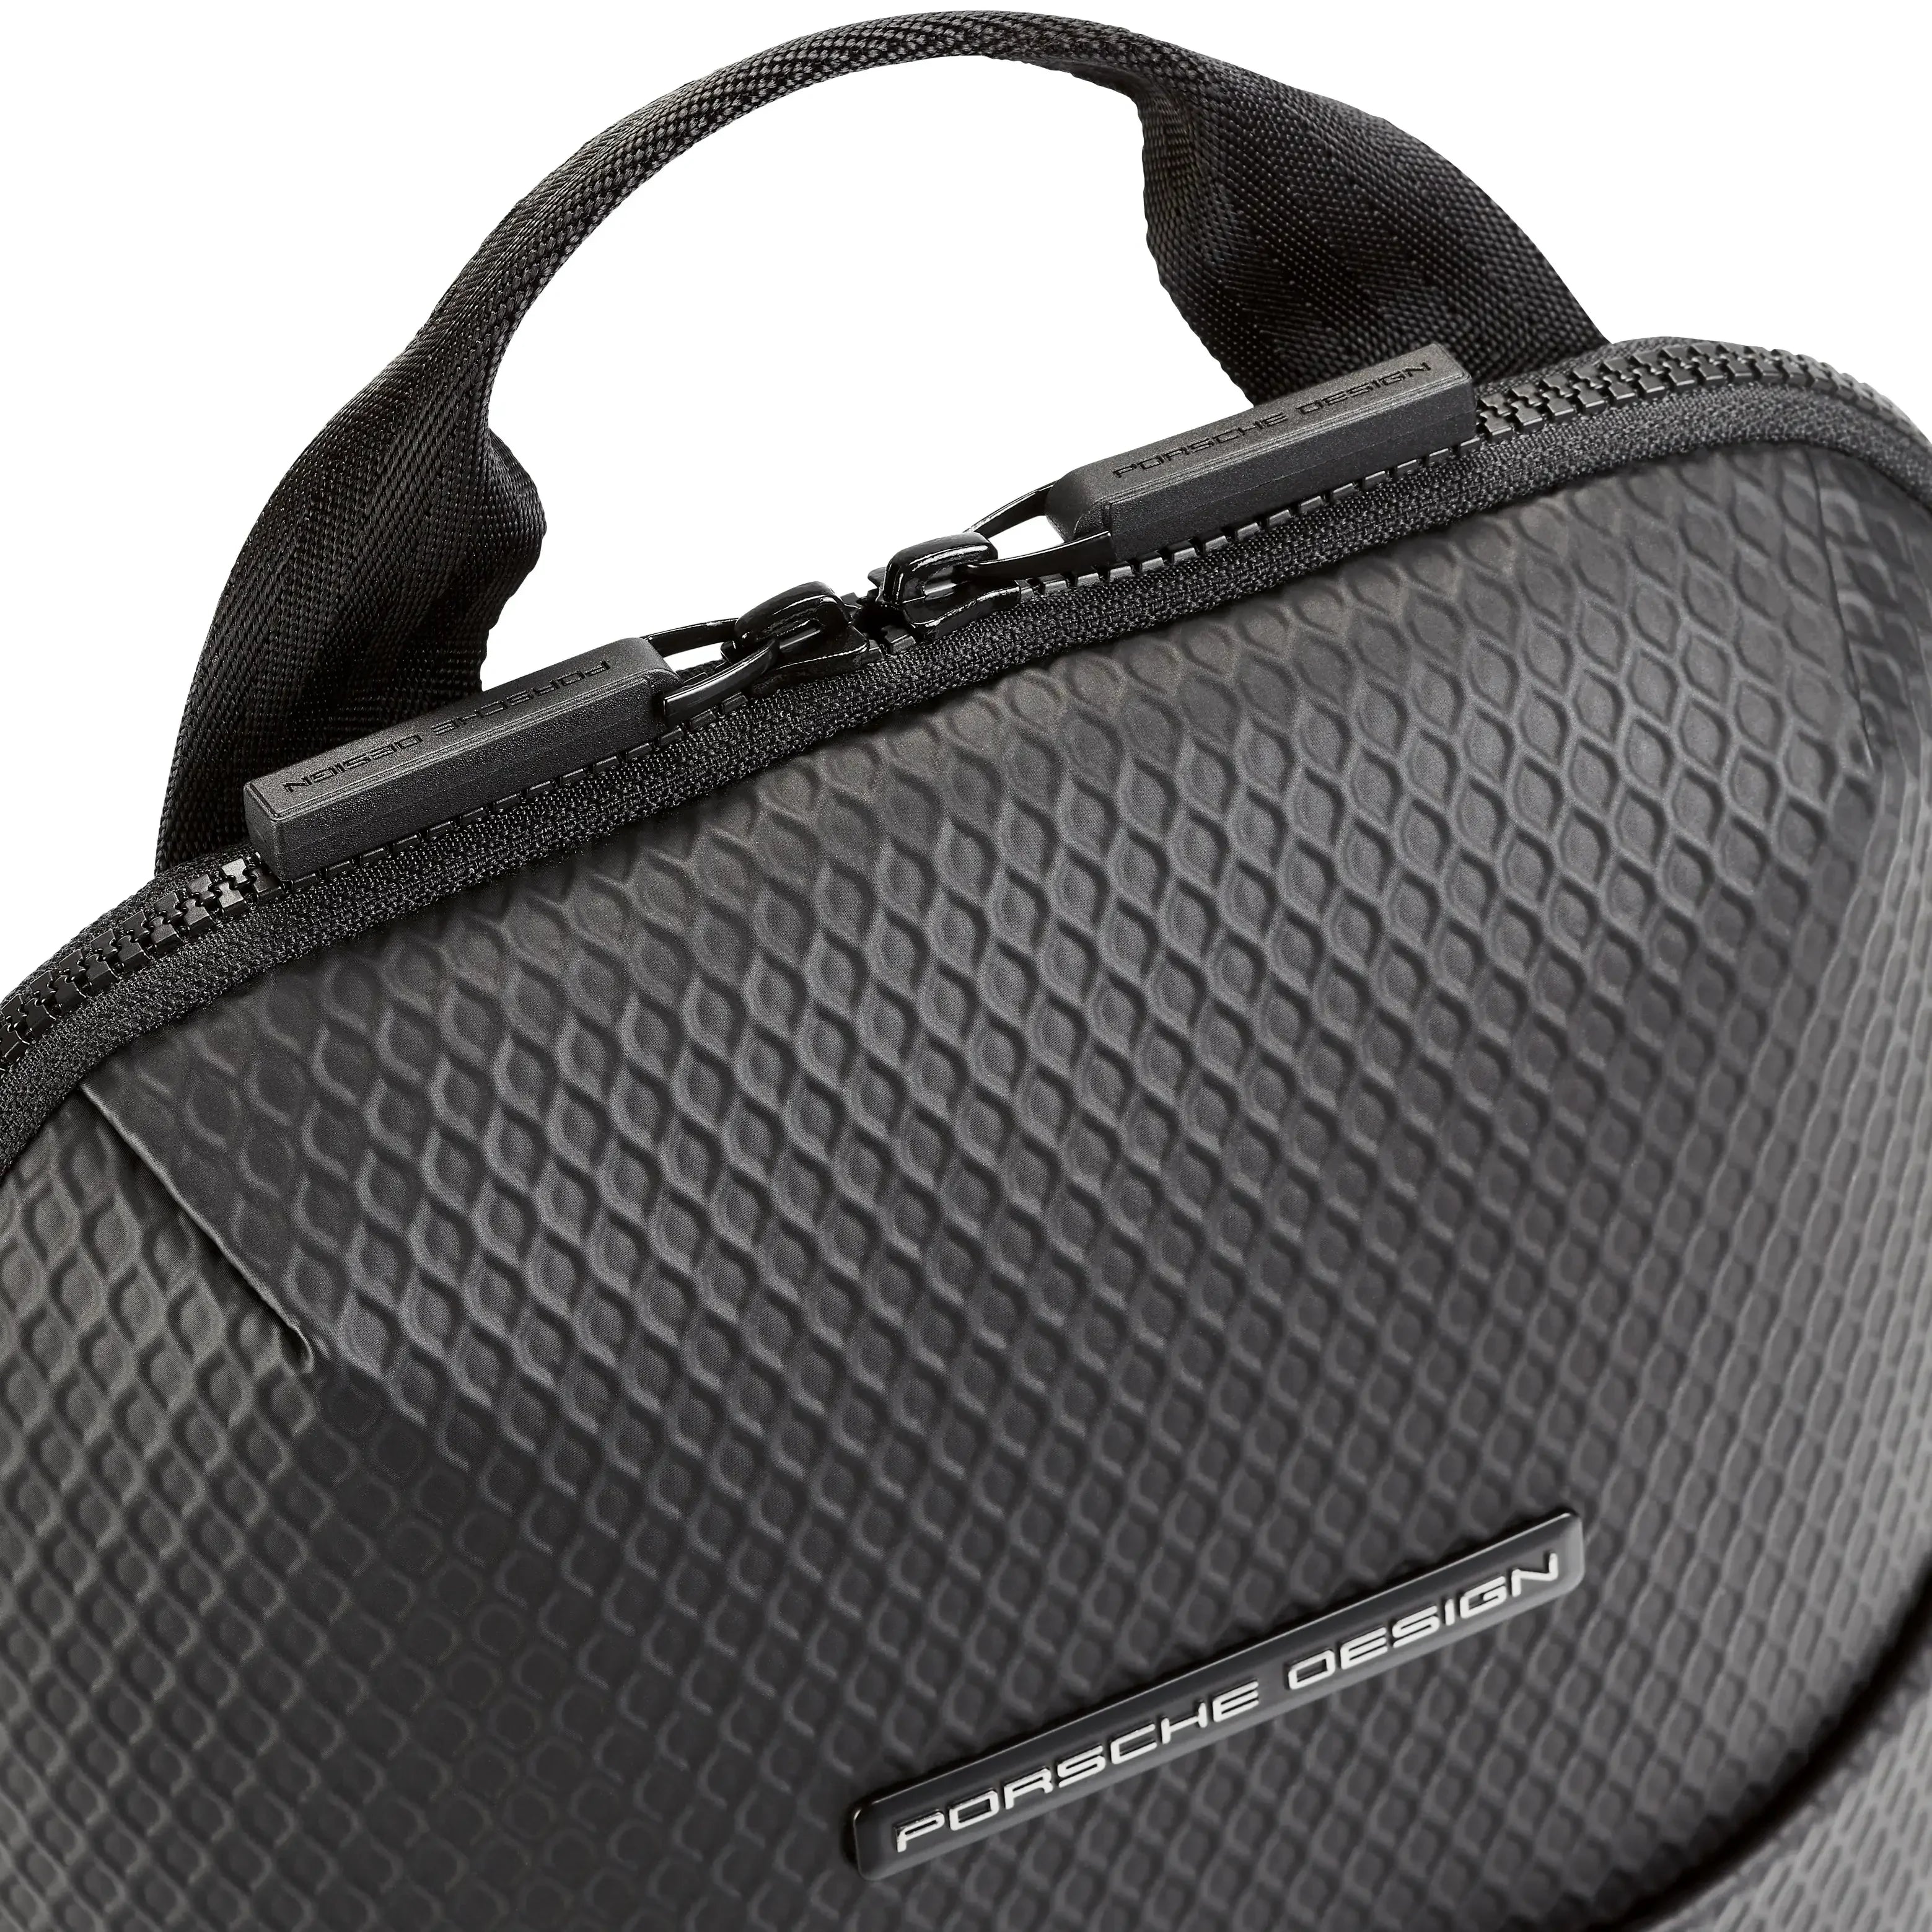 Porsche Design Studio Backpack XS 38 cm - Black